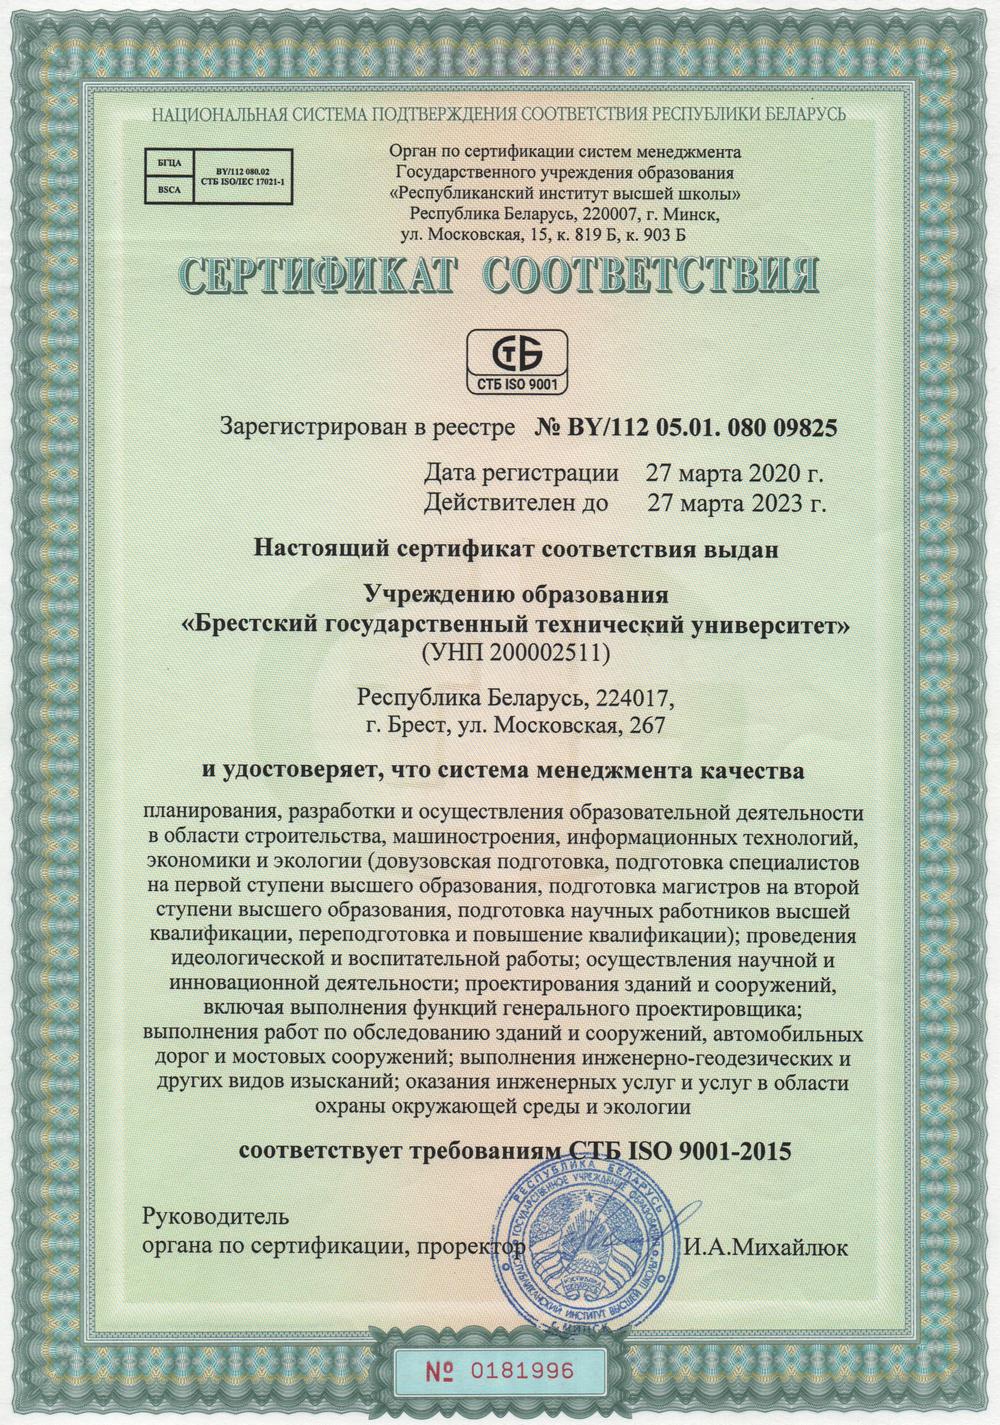 Сертификат соответствия БрГТУ